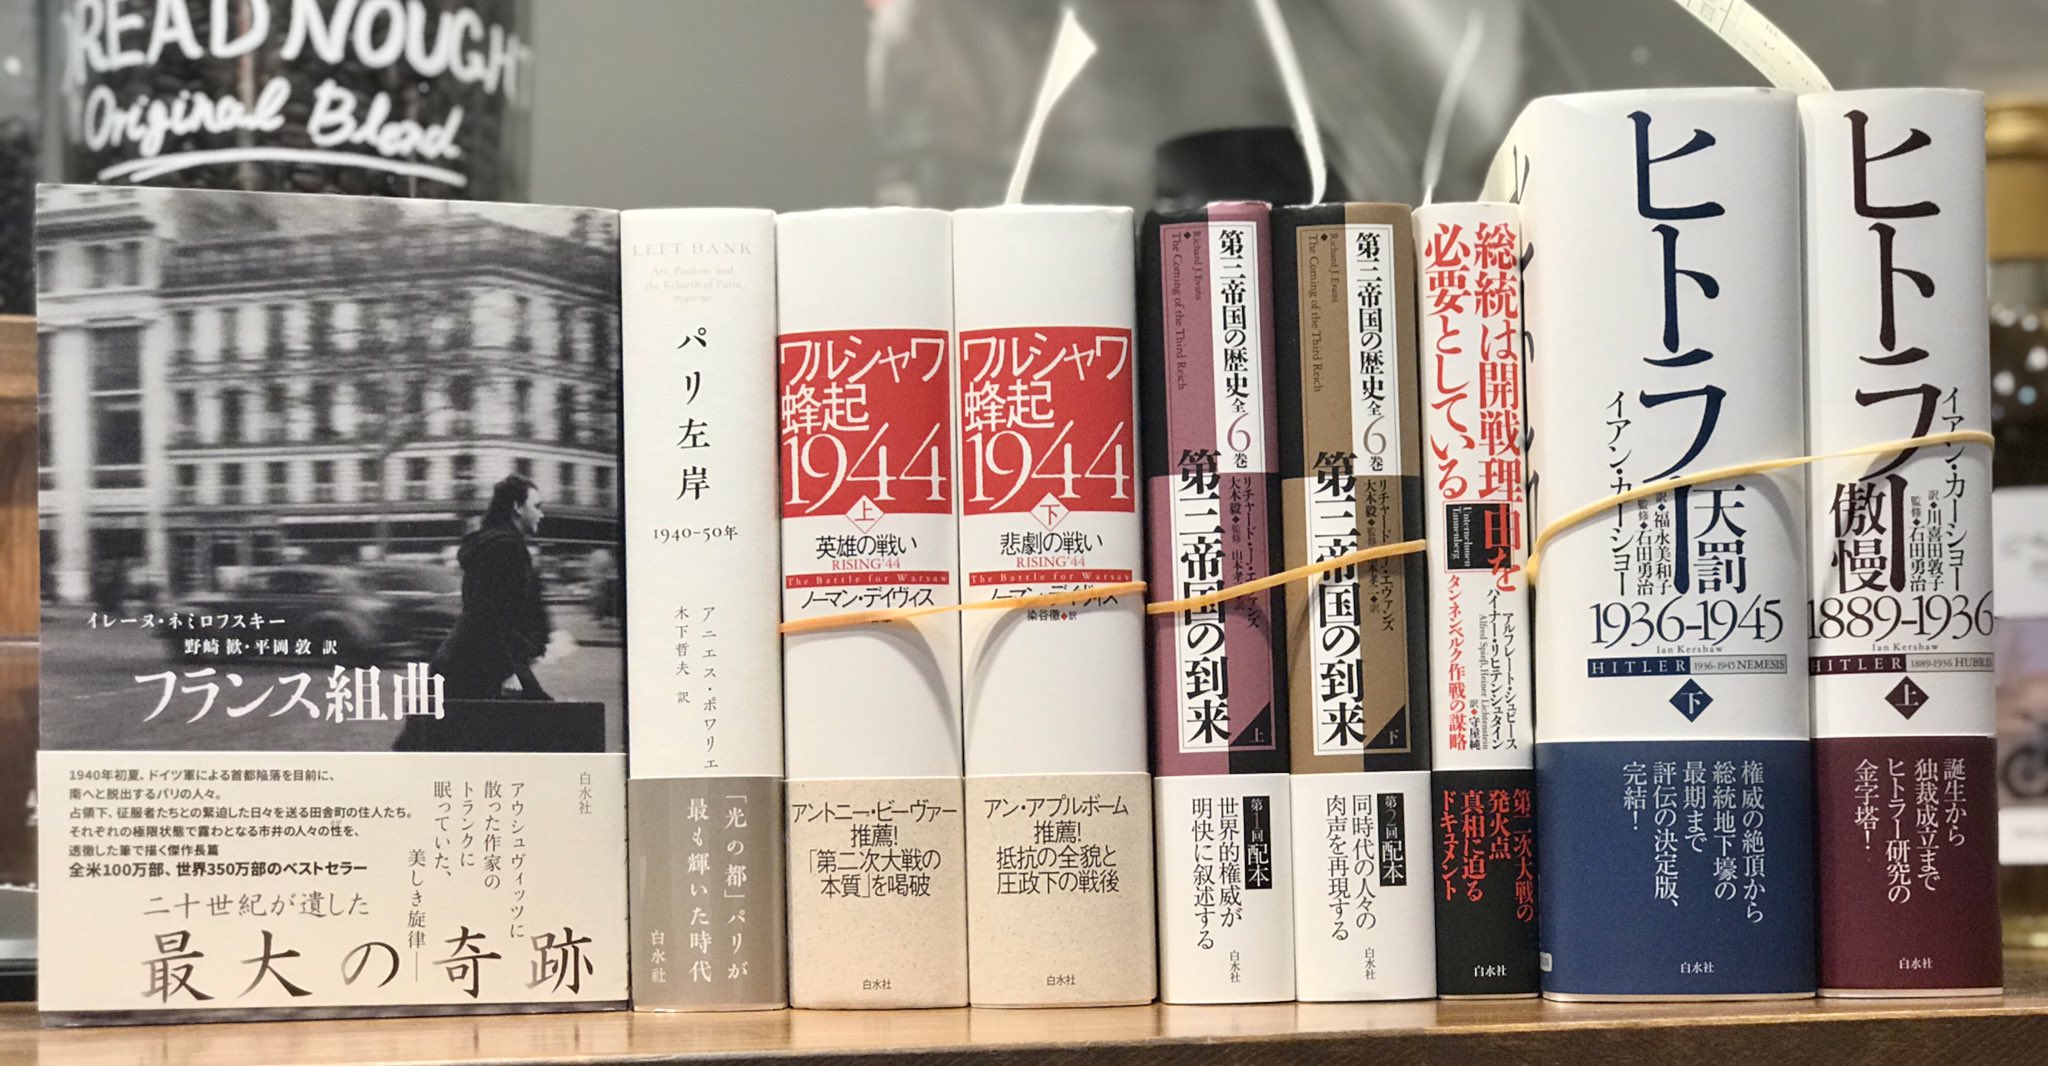 Books&Cafeドレッドノート/株式会社鈴木商会 on X: 